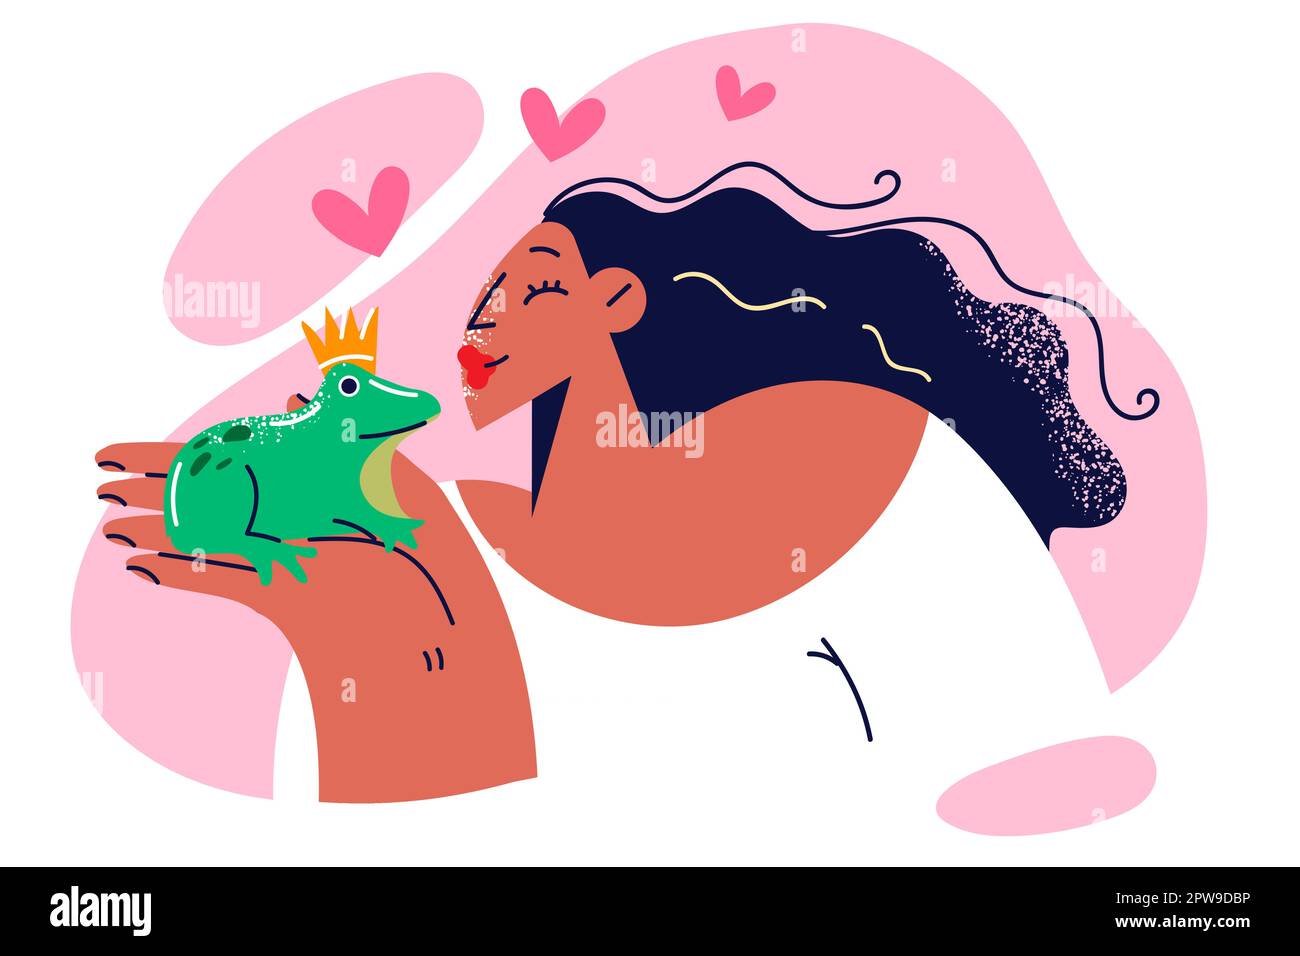 Eine Frau möchte einen gekrönten Frosch küssen, nachdem sie ein Märchen über die Verwandlung eines Tieres in einen Prinzen gelesen hat Stock Vektor